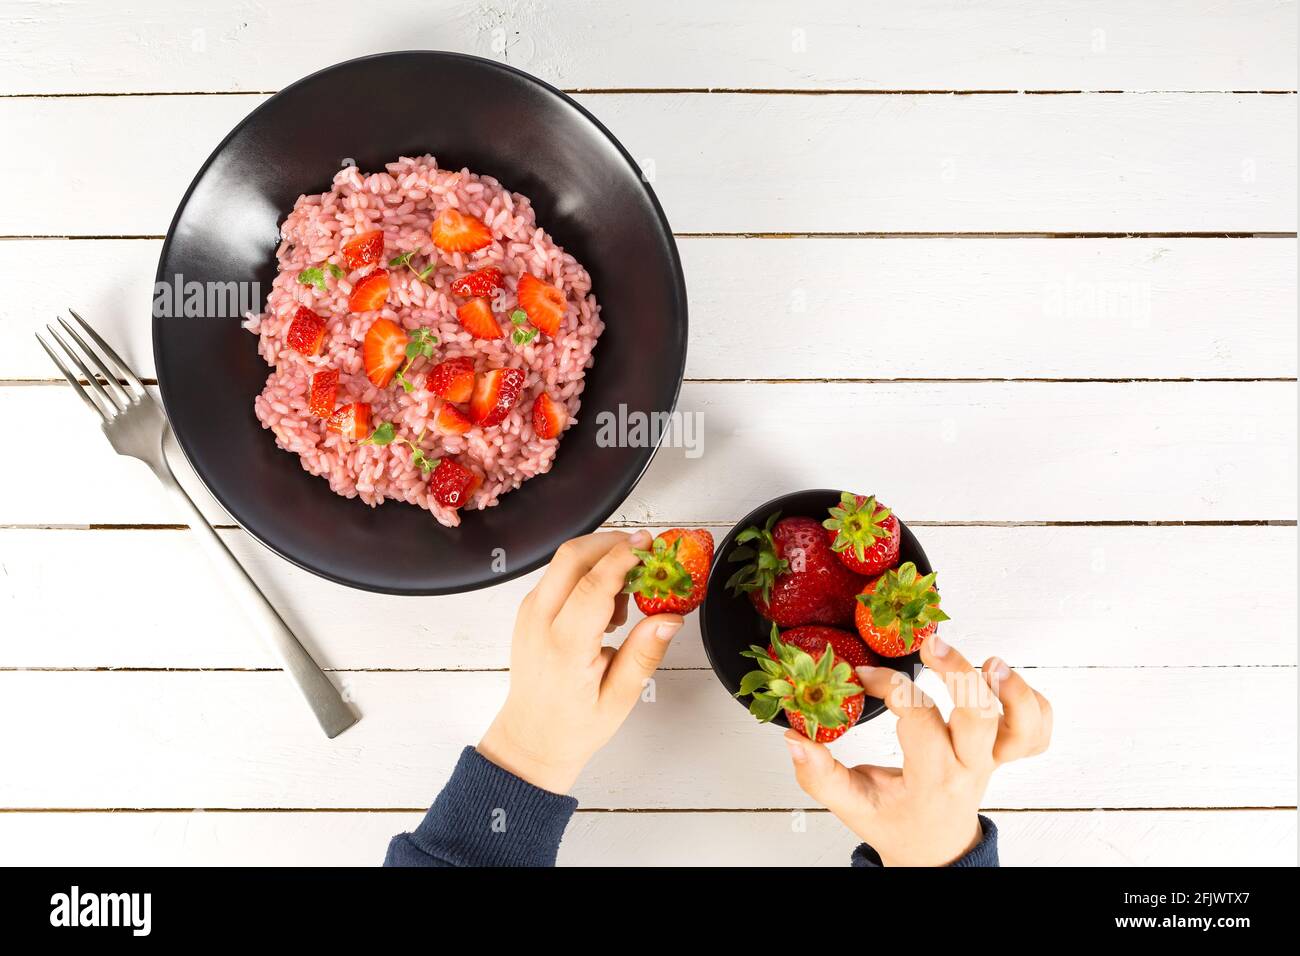 Risotto aux fruits à la fraise servi dans un plat noir sur une table en bois blanc. plat avec espace de copie. Cuisine gastronomique italienne. Mise au point sélective. Banque D'Images